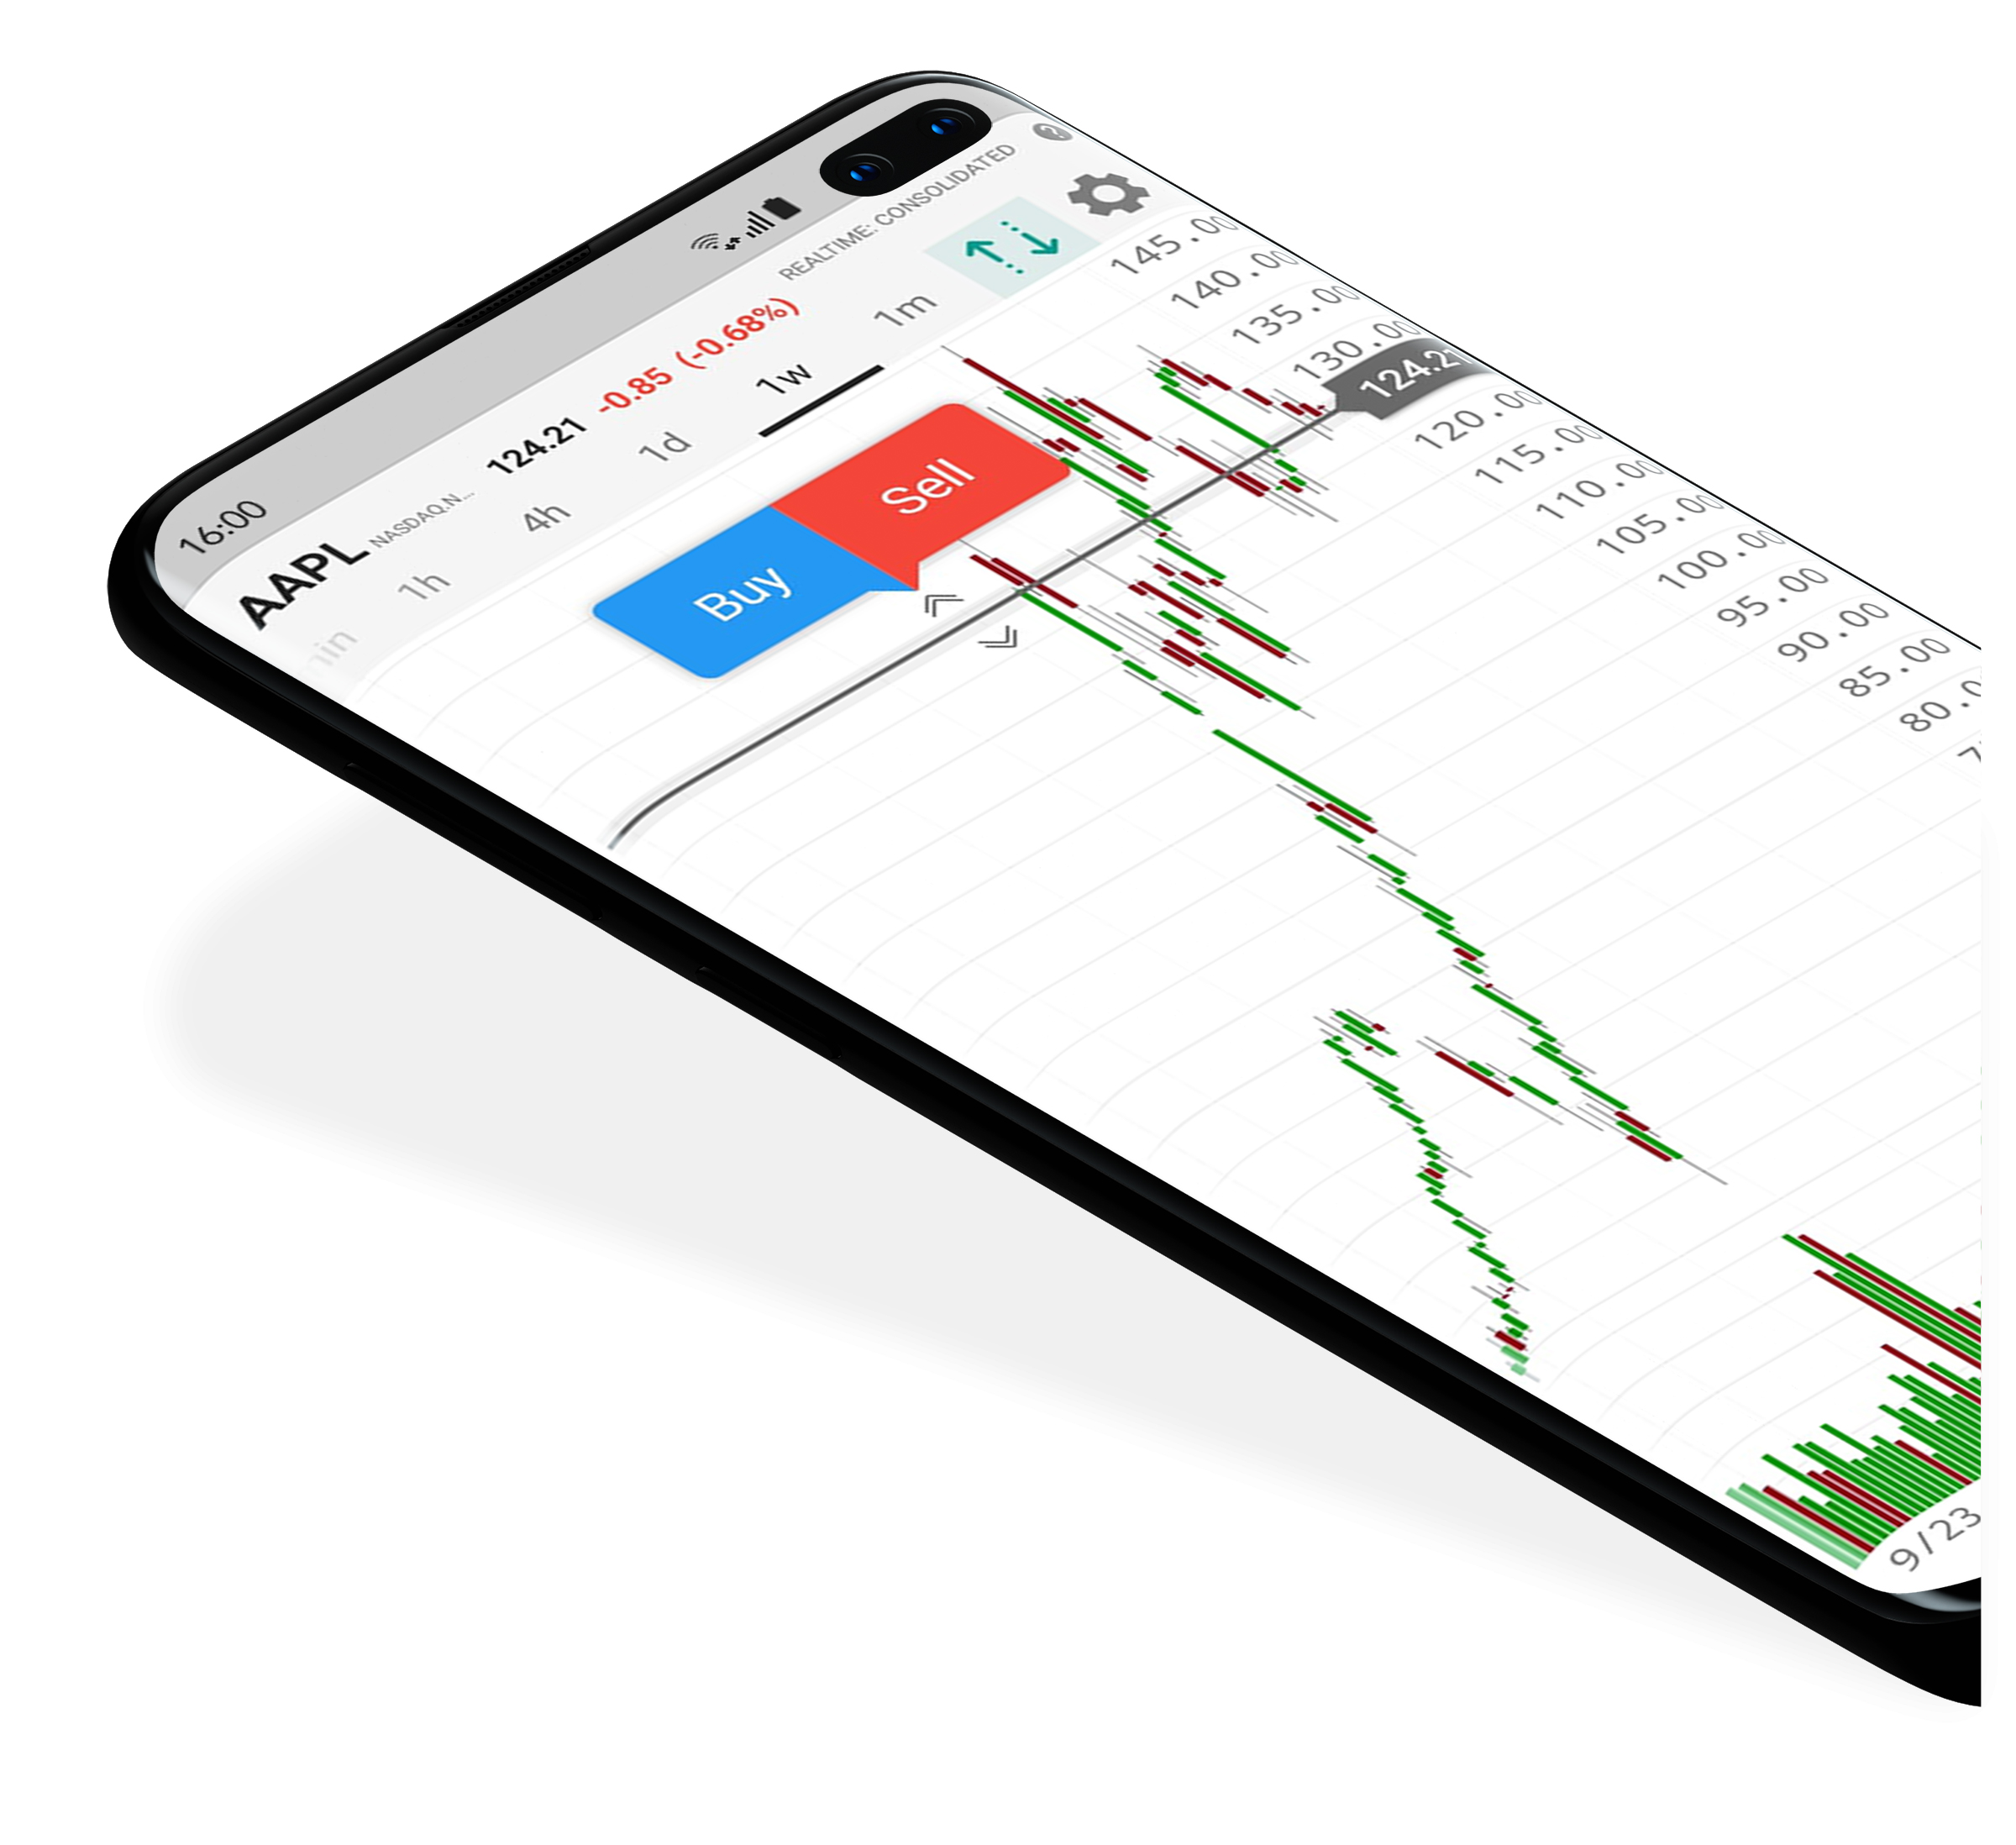 Platforma handlowa LYNX z otwartym wykresem cenowym na urządzeniu mobilnym z systemem Android